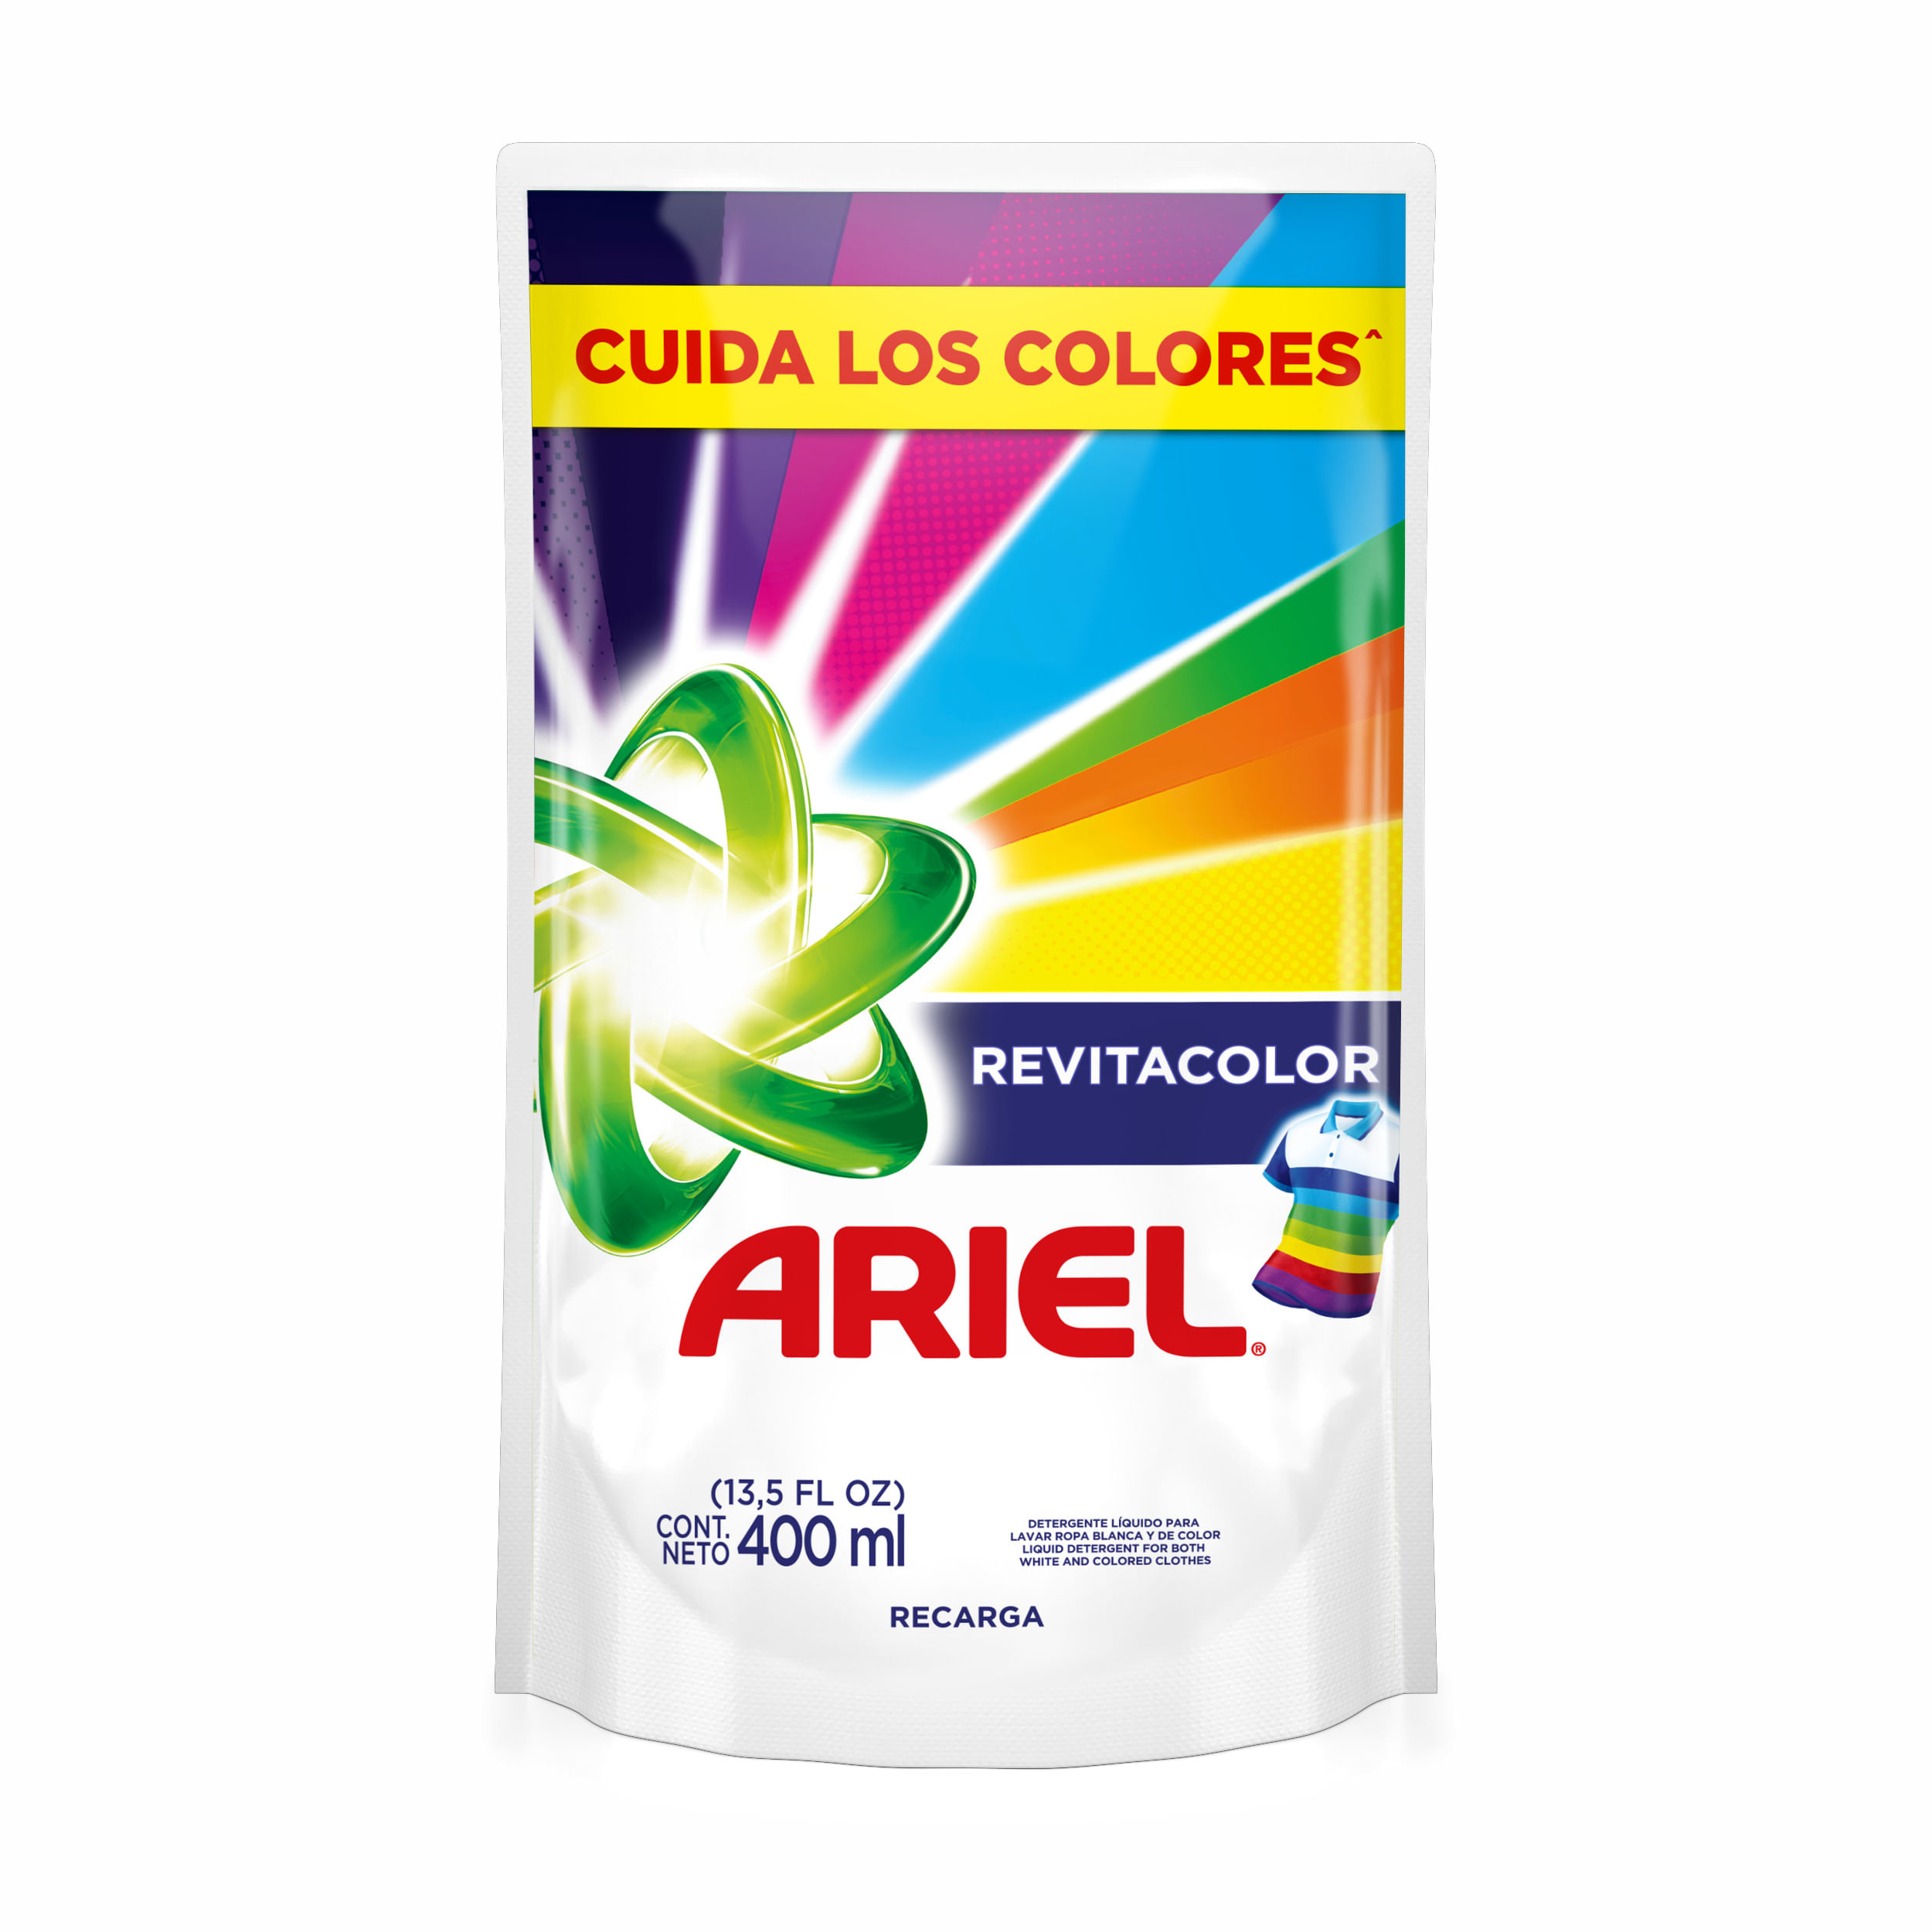 Detergente líquido Ariel Expert remueve manchas y cuida el color 3